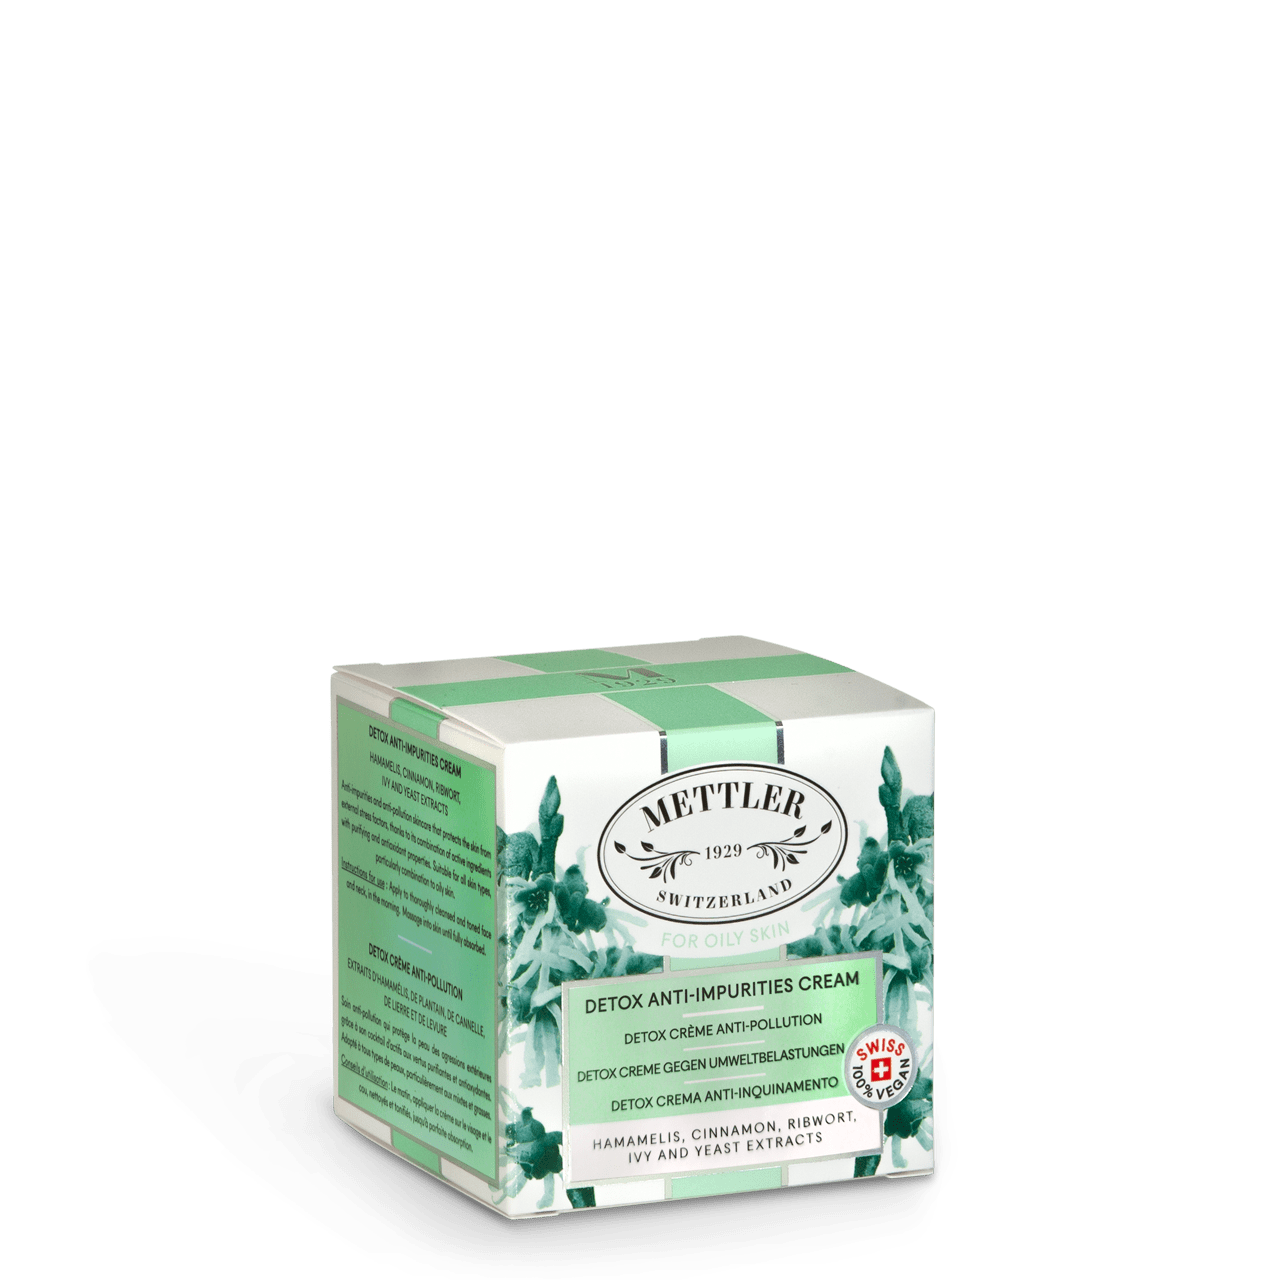 Detox Anti-Impurities Cream / Detox Arındırıcı Krem